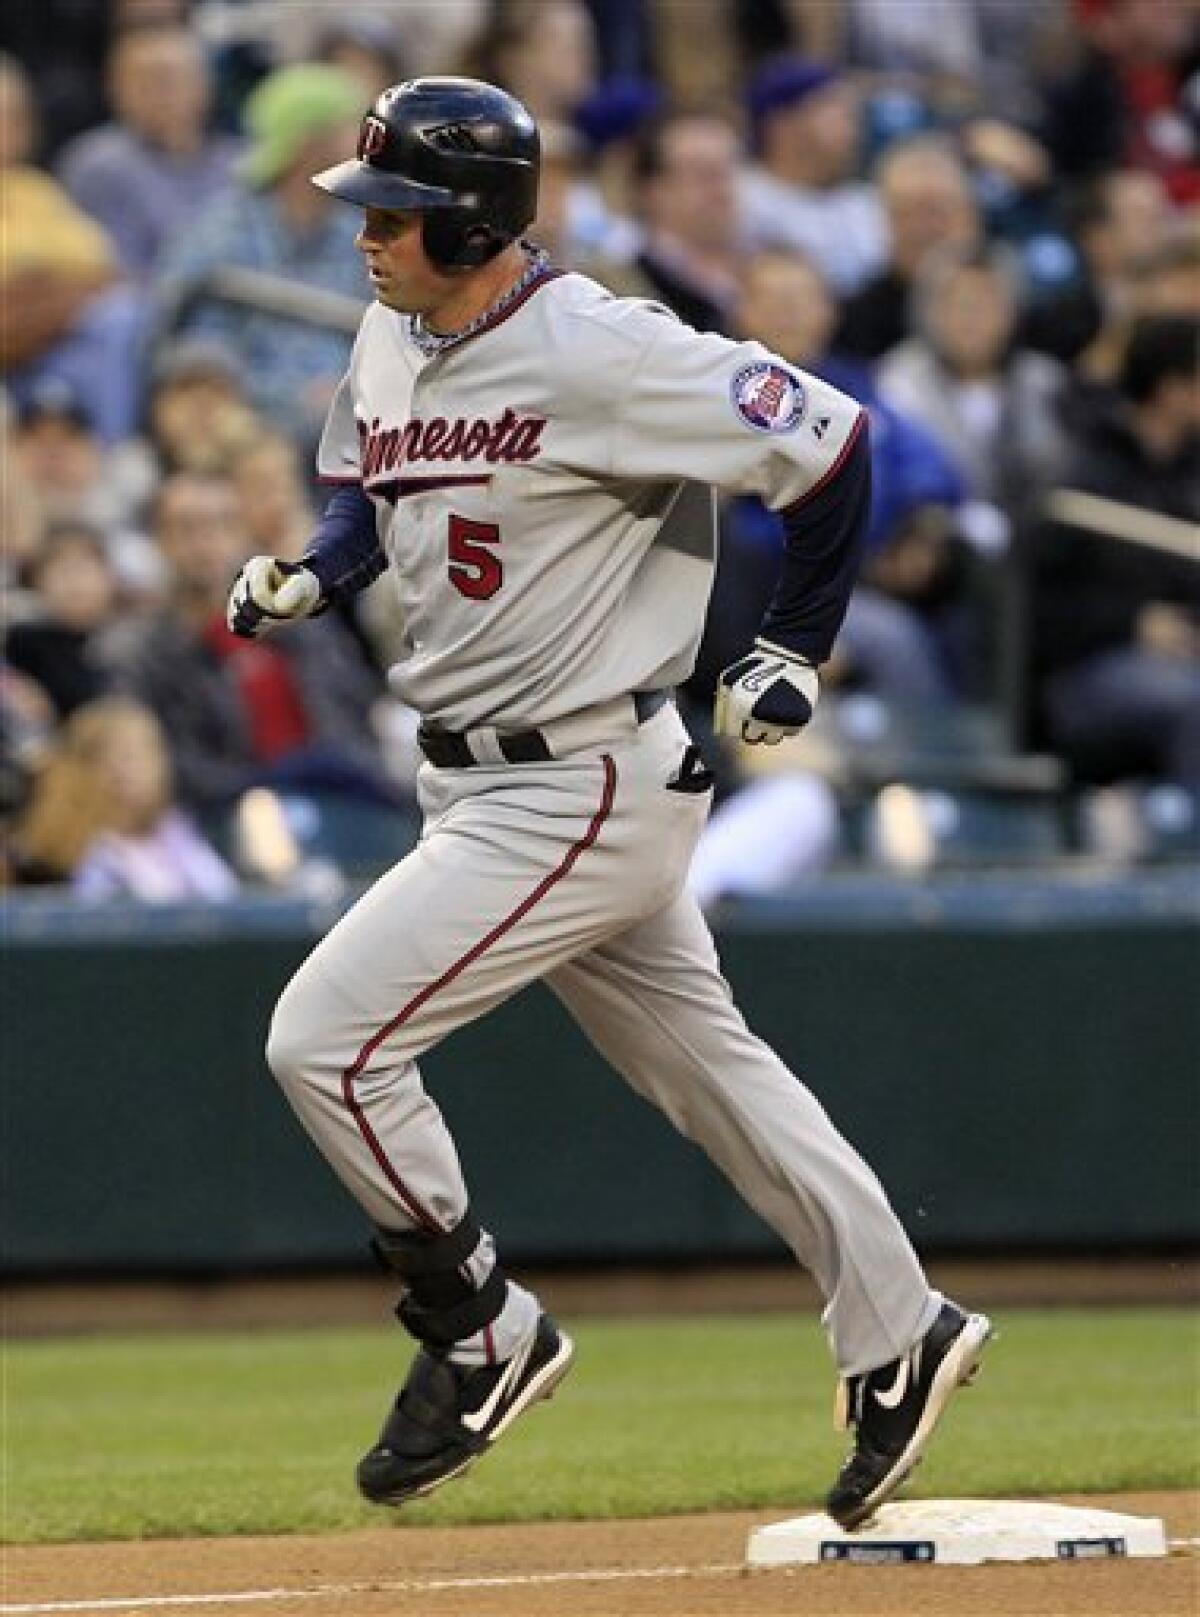 Ken Griffey Jr. retires from baseball on June 2, 2010, ending the